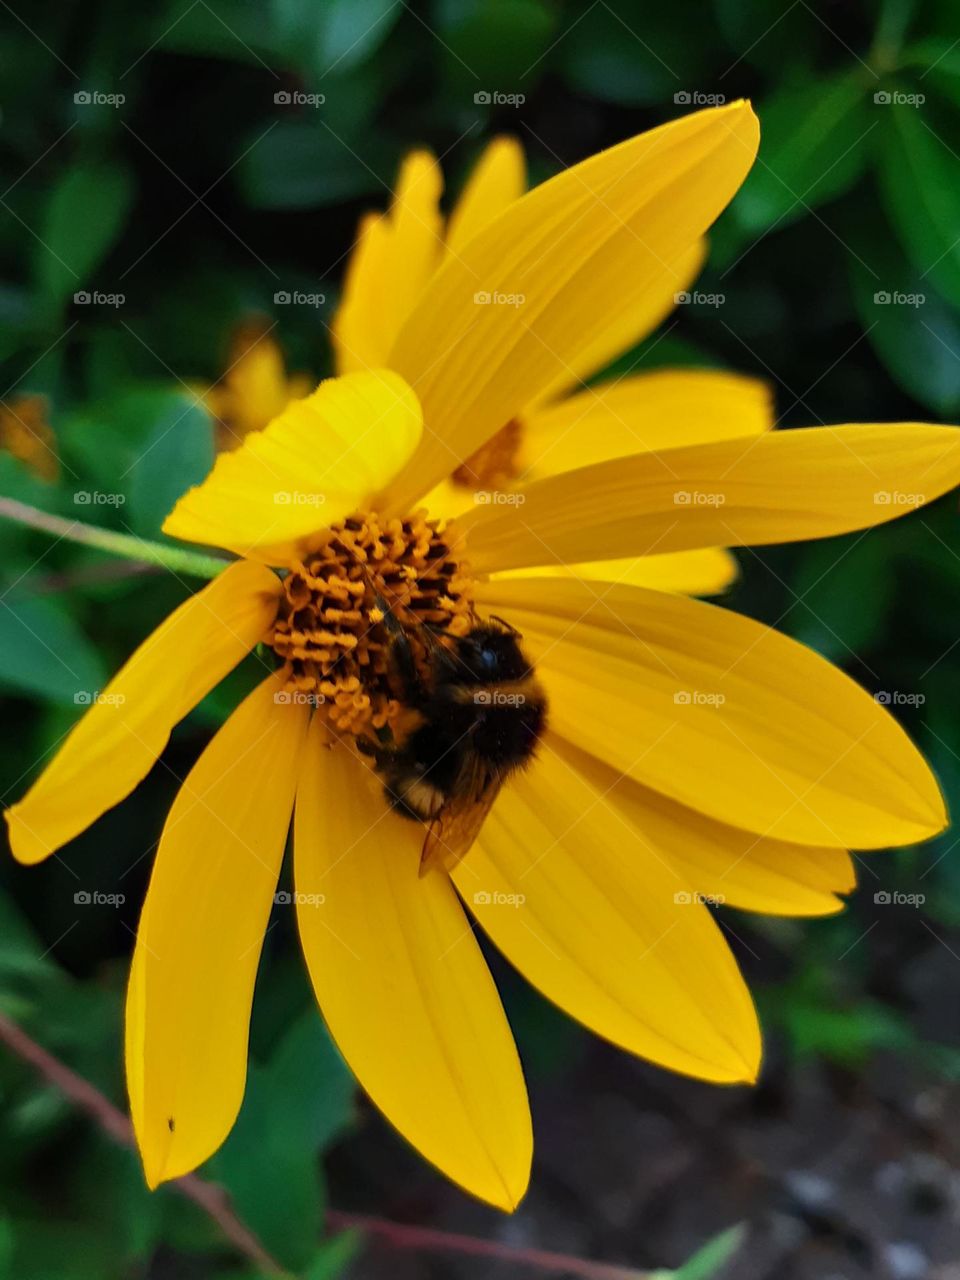 Bubblebee on flower